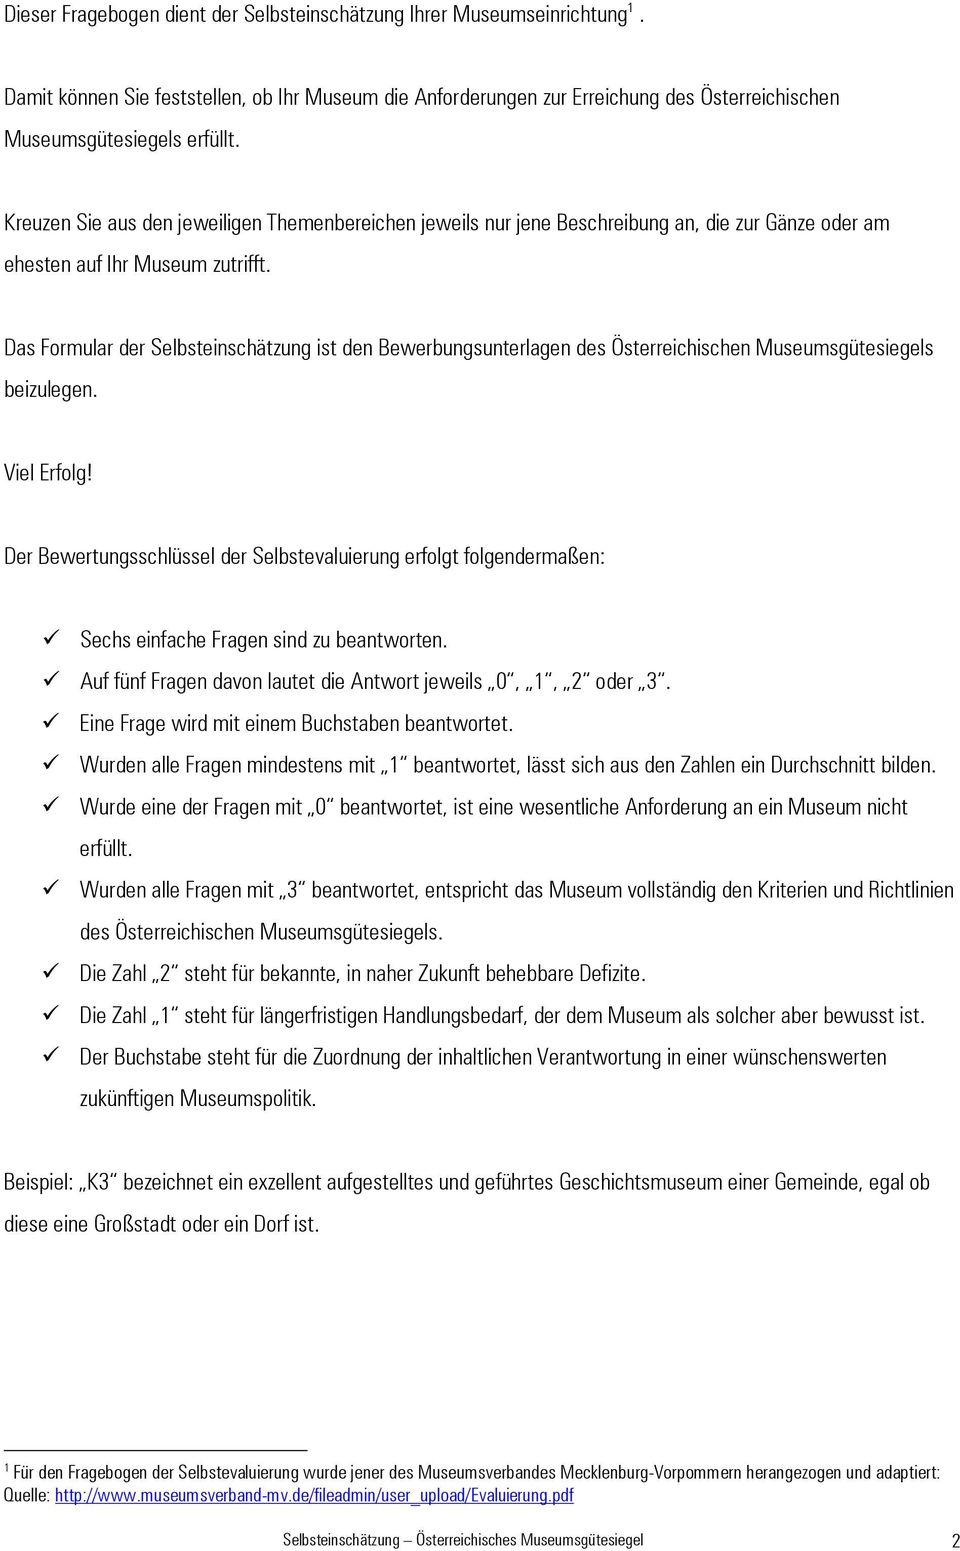 Das Formular der Selbsteinschätzung ist den Bewerbungsunterlagen des Österreichischen Museumsgütesiegels beizulegen. Viel Erfolg!